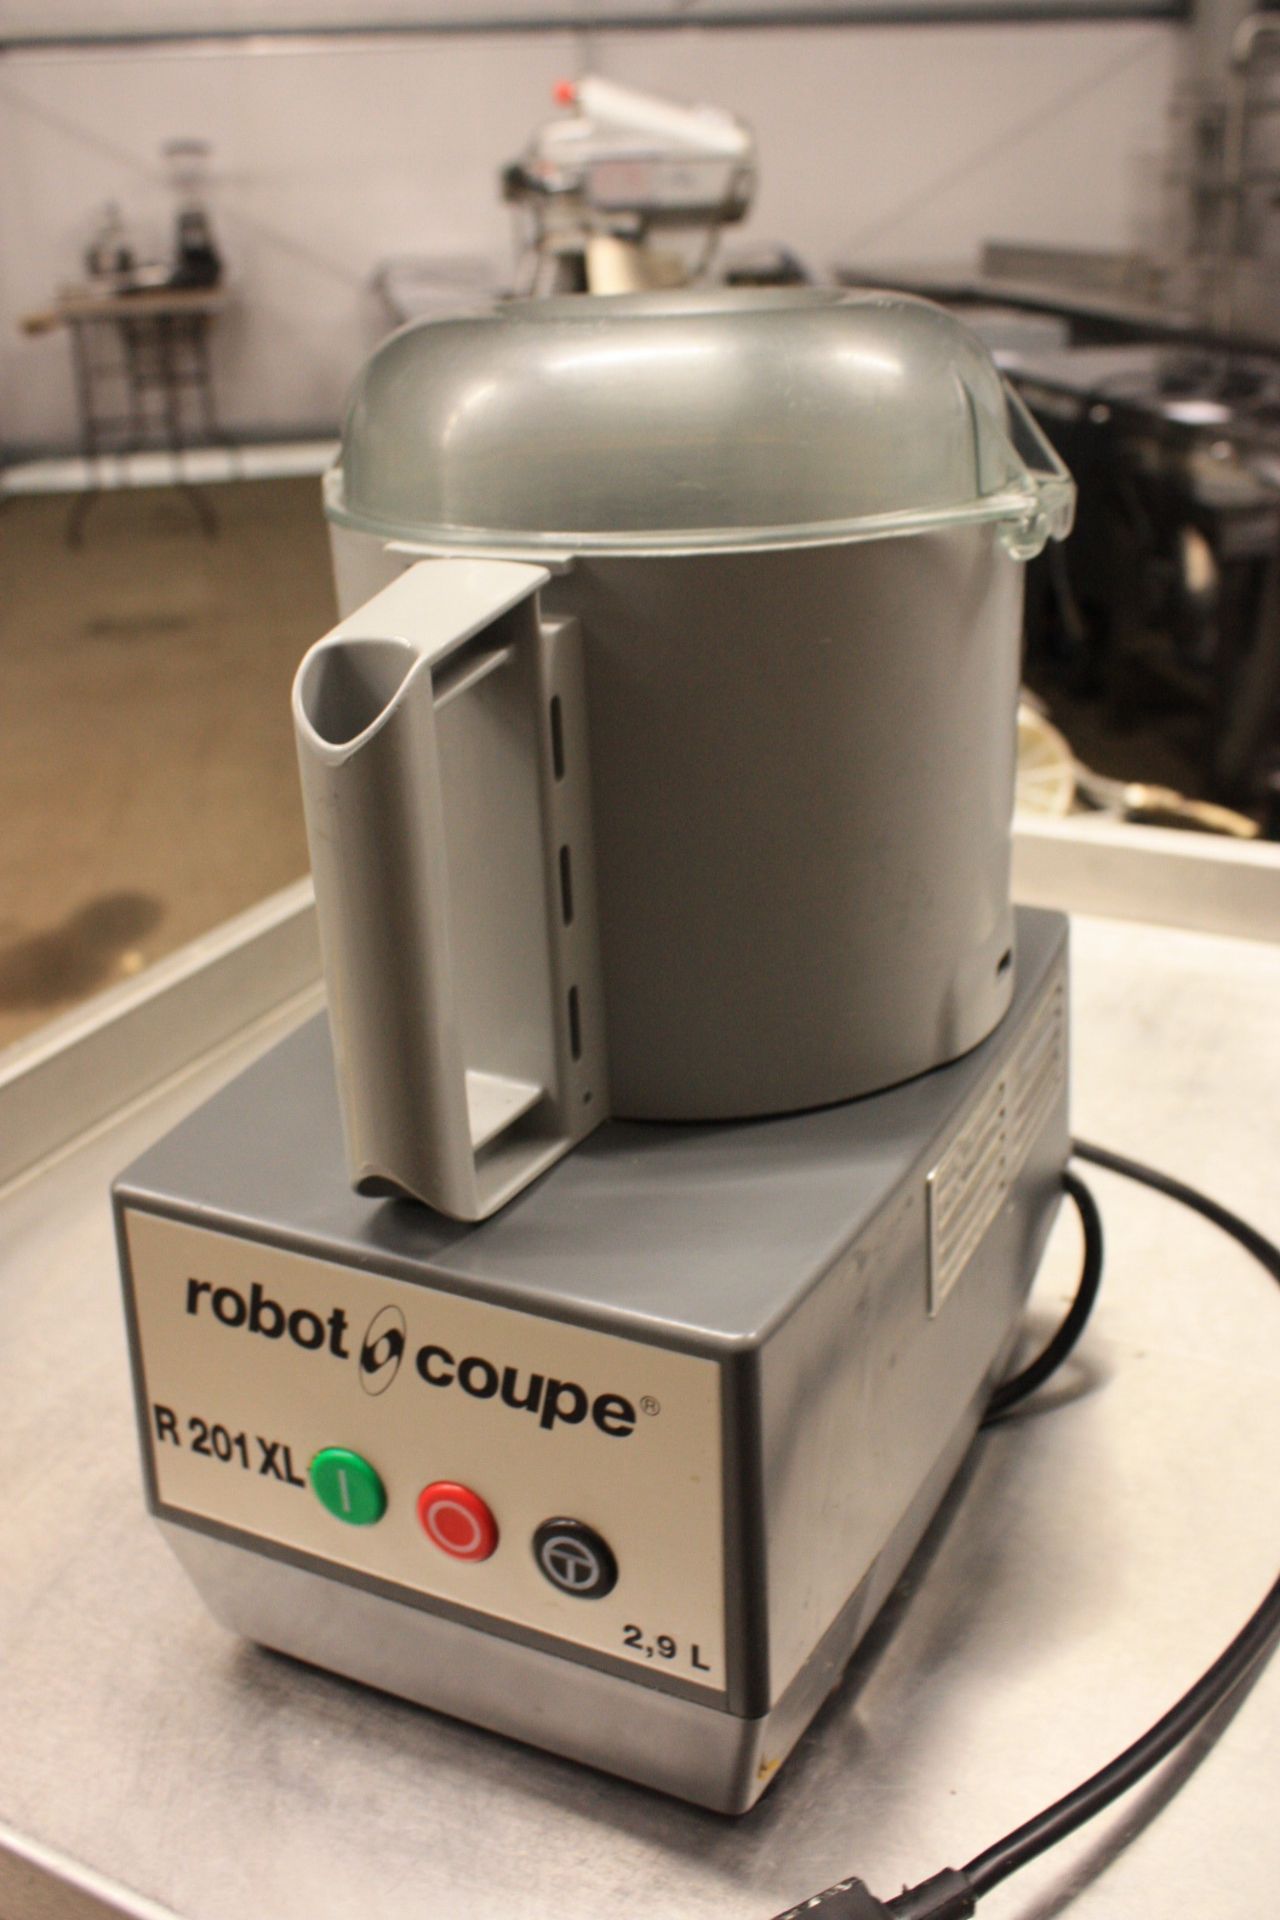 Robot Coupe Food Processor model R 201 XL. 2.9L - 240v.